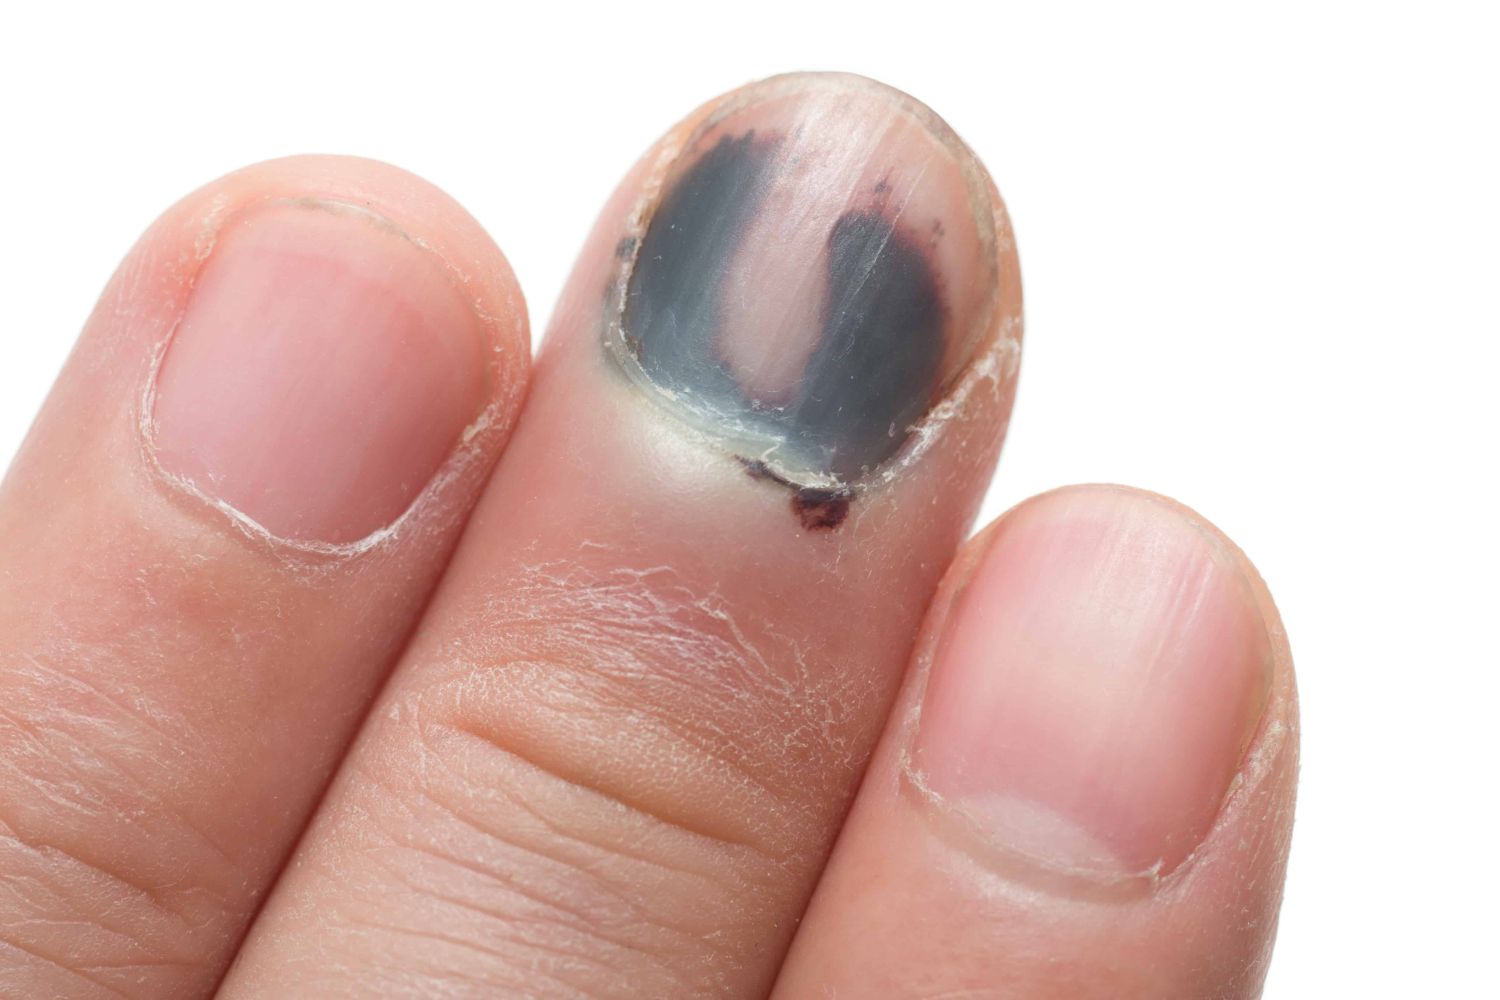 Травма ногтя на руке - причины, симптомы, цены на лечение травмы ногтя на руках в Москве